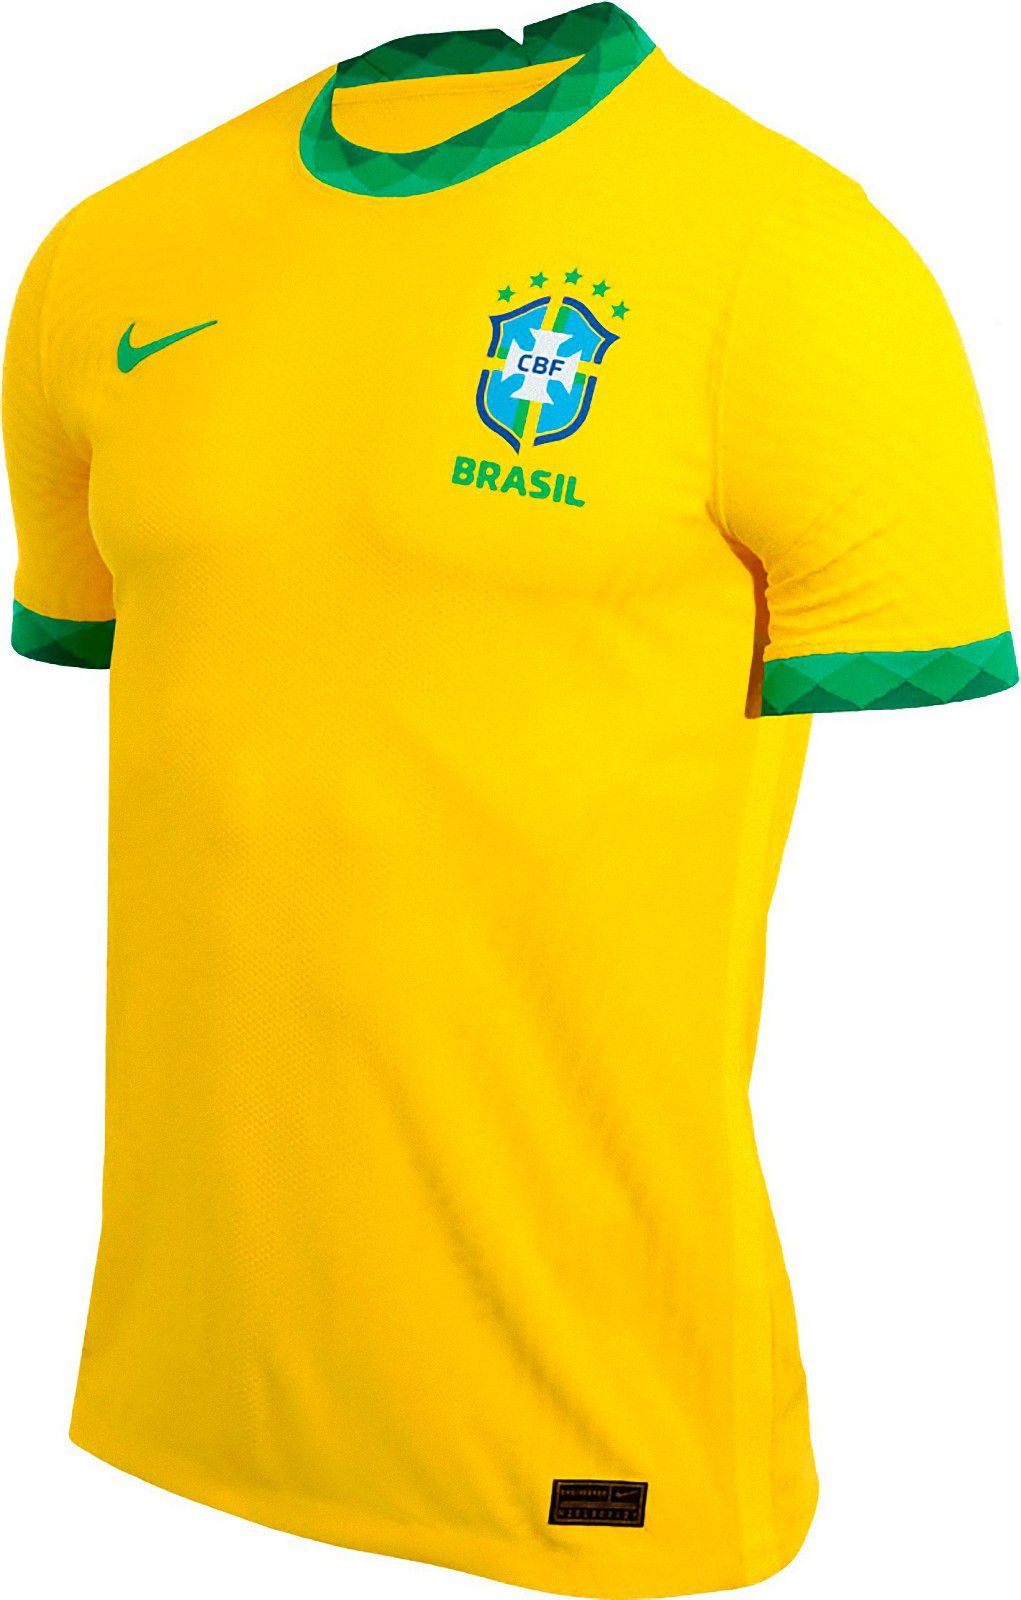 ブラジル代表 ユニフォーム ユニ11